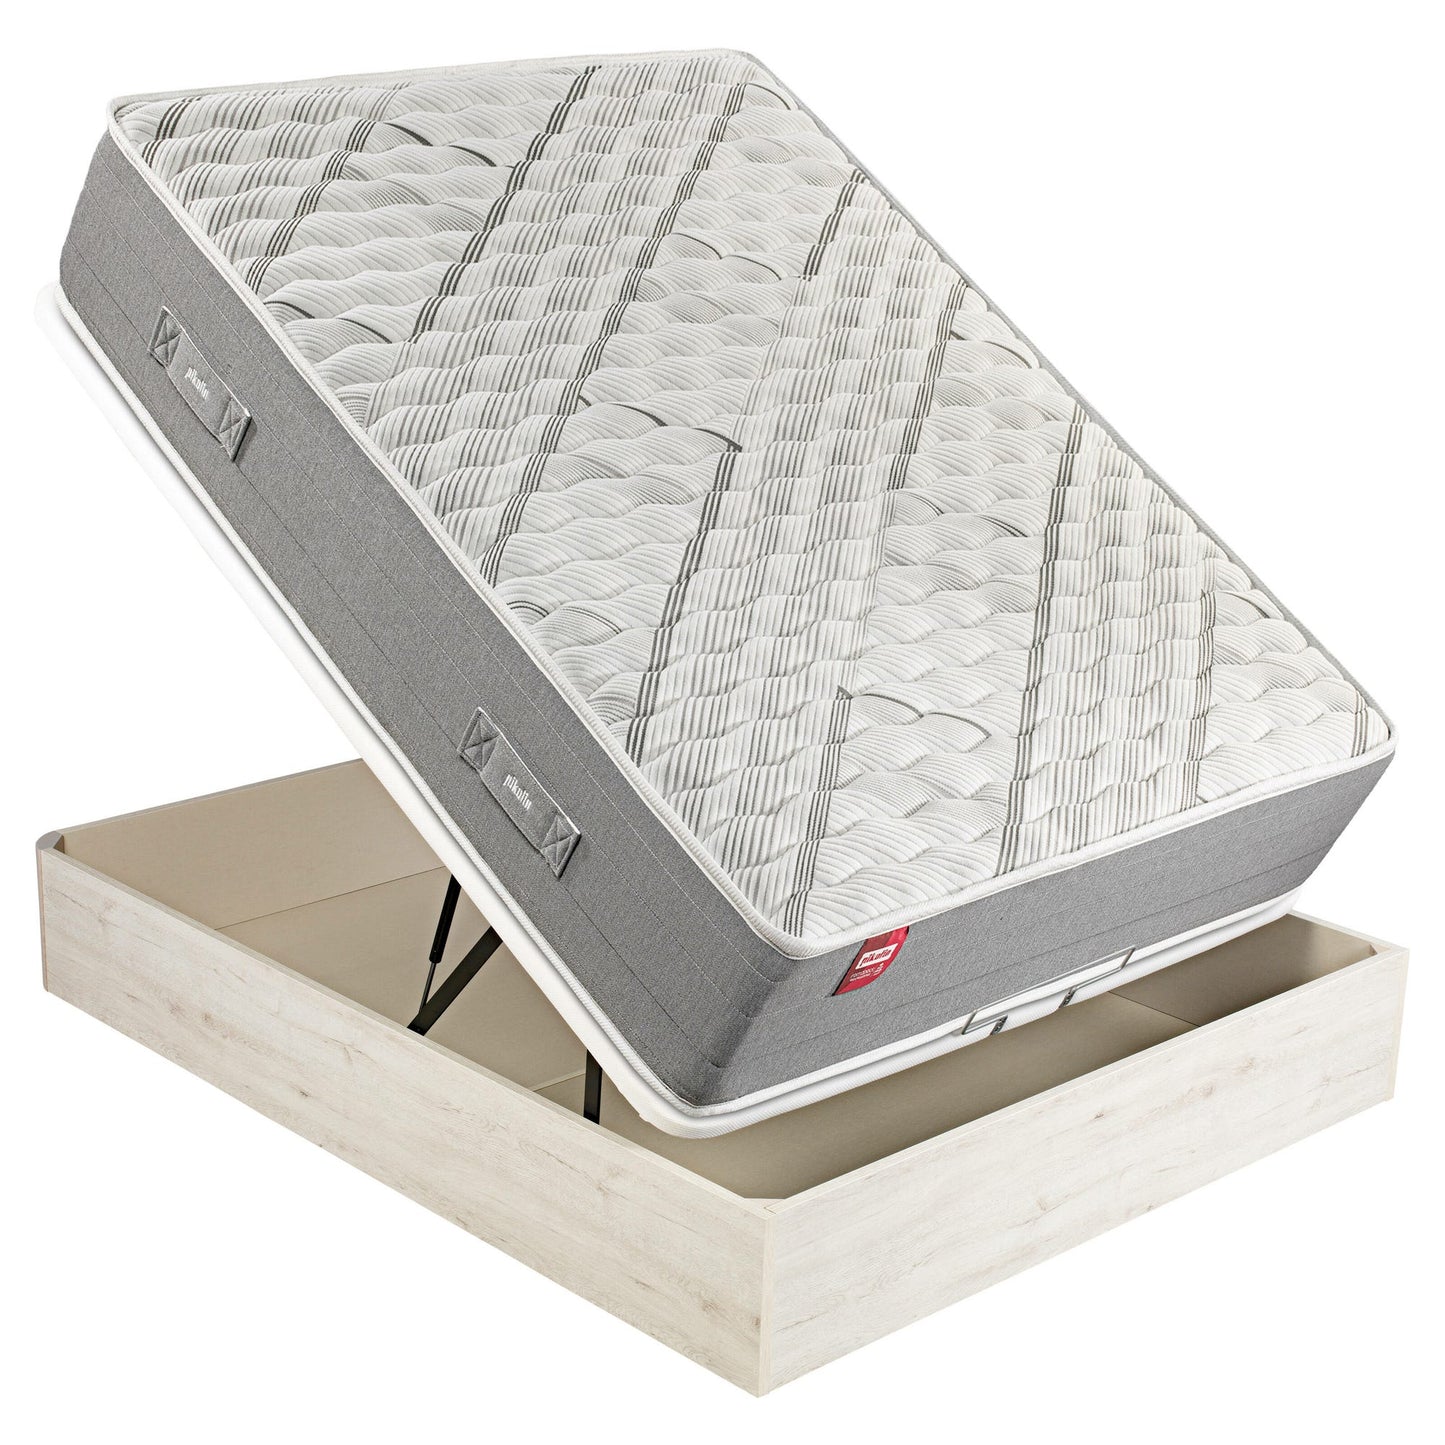 Pack de colchón de muelles Normablock, canapé abatible de color glaciar y 2 almohadas de visco - ARCE+AP11518+AL - 90x200